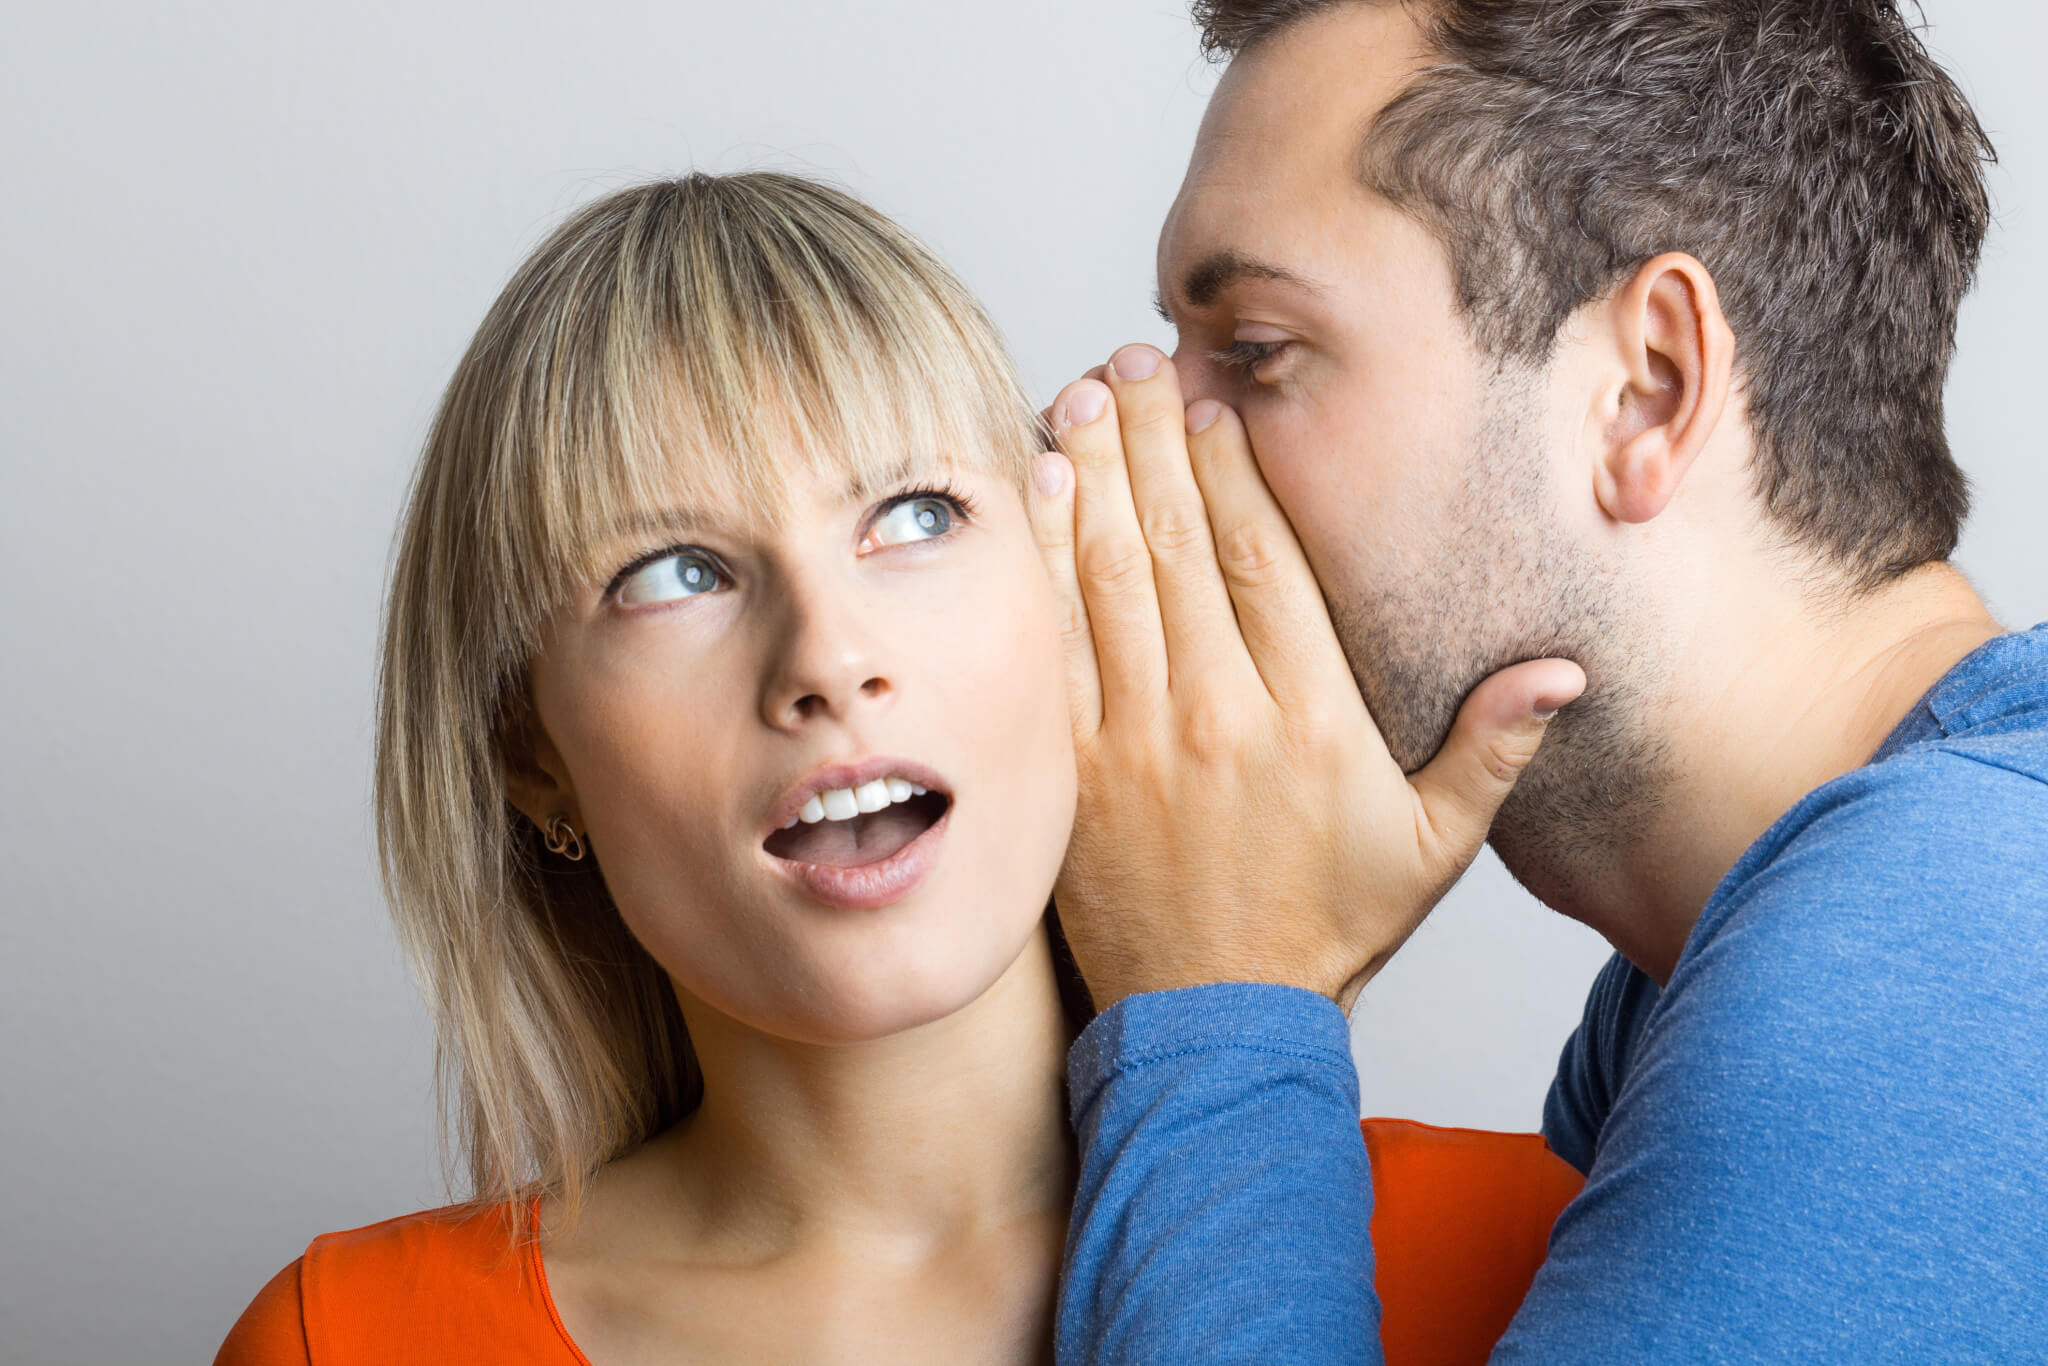 Man telling a woman a secret